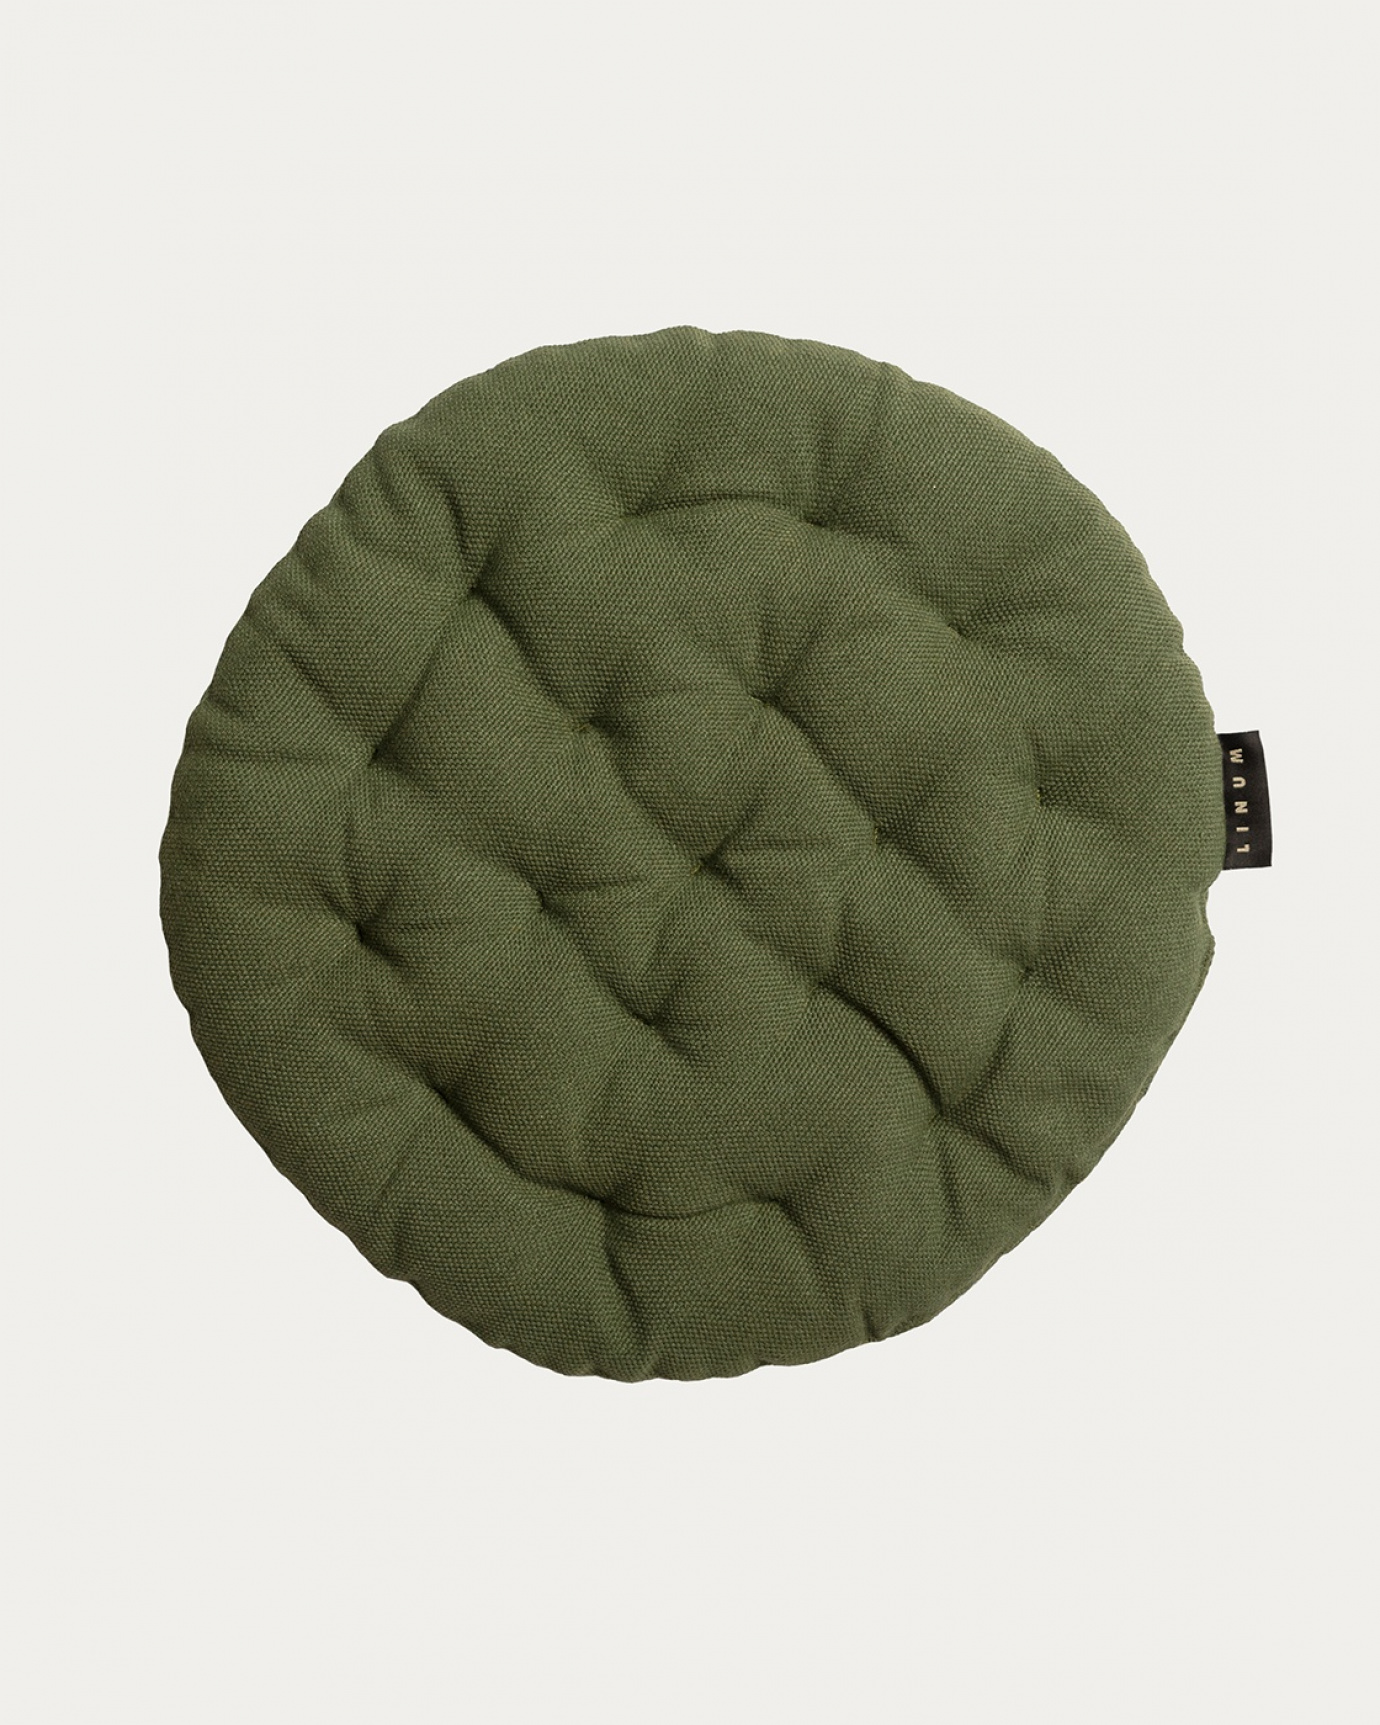 Produktbild mörk olivgrön PEPPER sittdyna av mjuk bomull med återvunnen polyesterfyllning från LINUM DESIGN. Storlek ø37 cm.